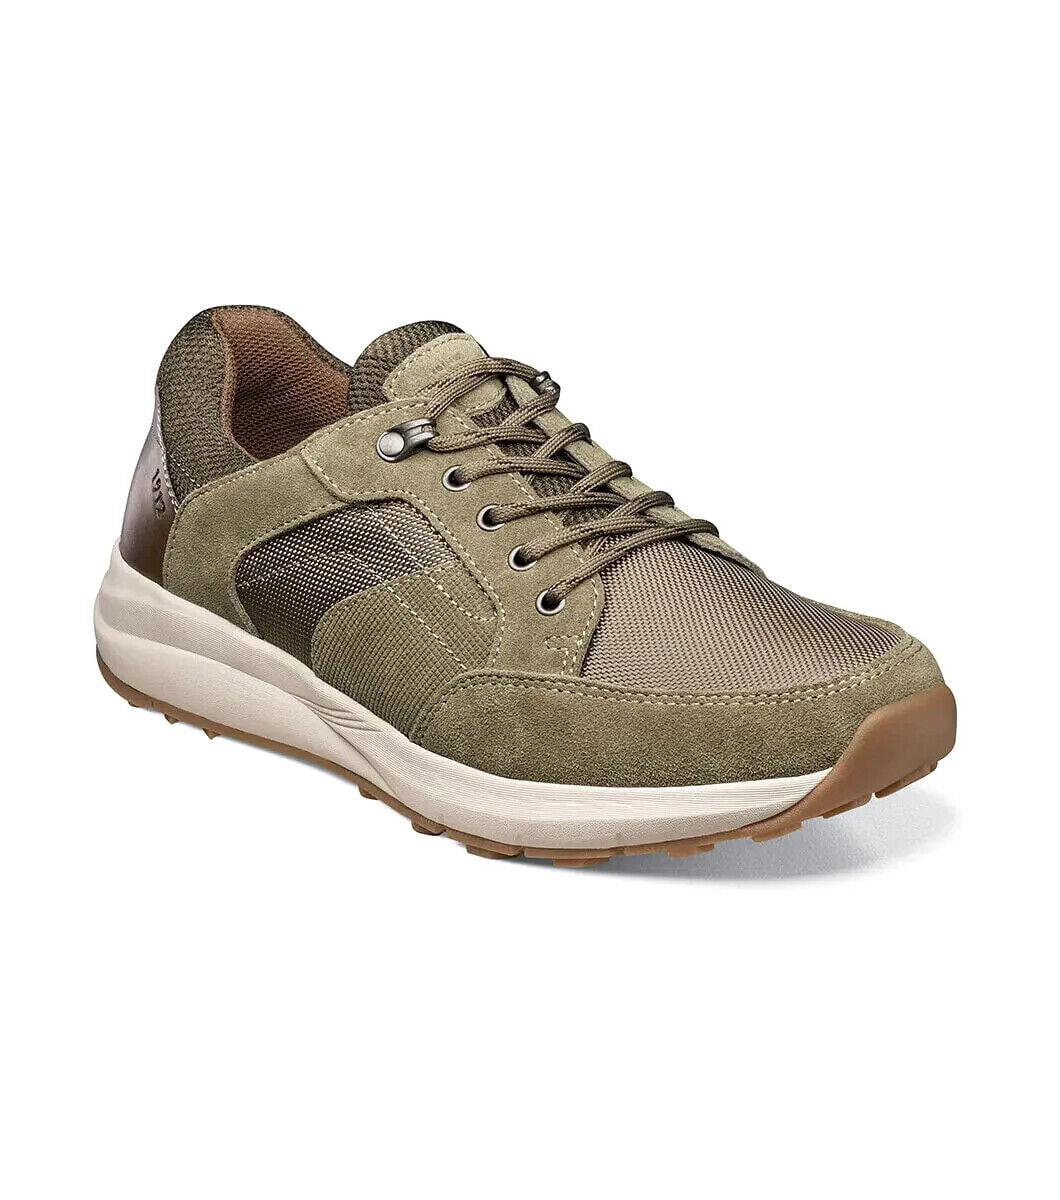 Men's Nunn Bush Excursion Lite Moc Toe Oxford Walking Shoes Stone 84980 ...